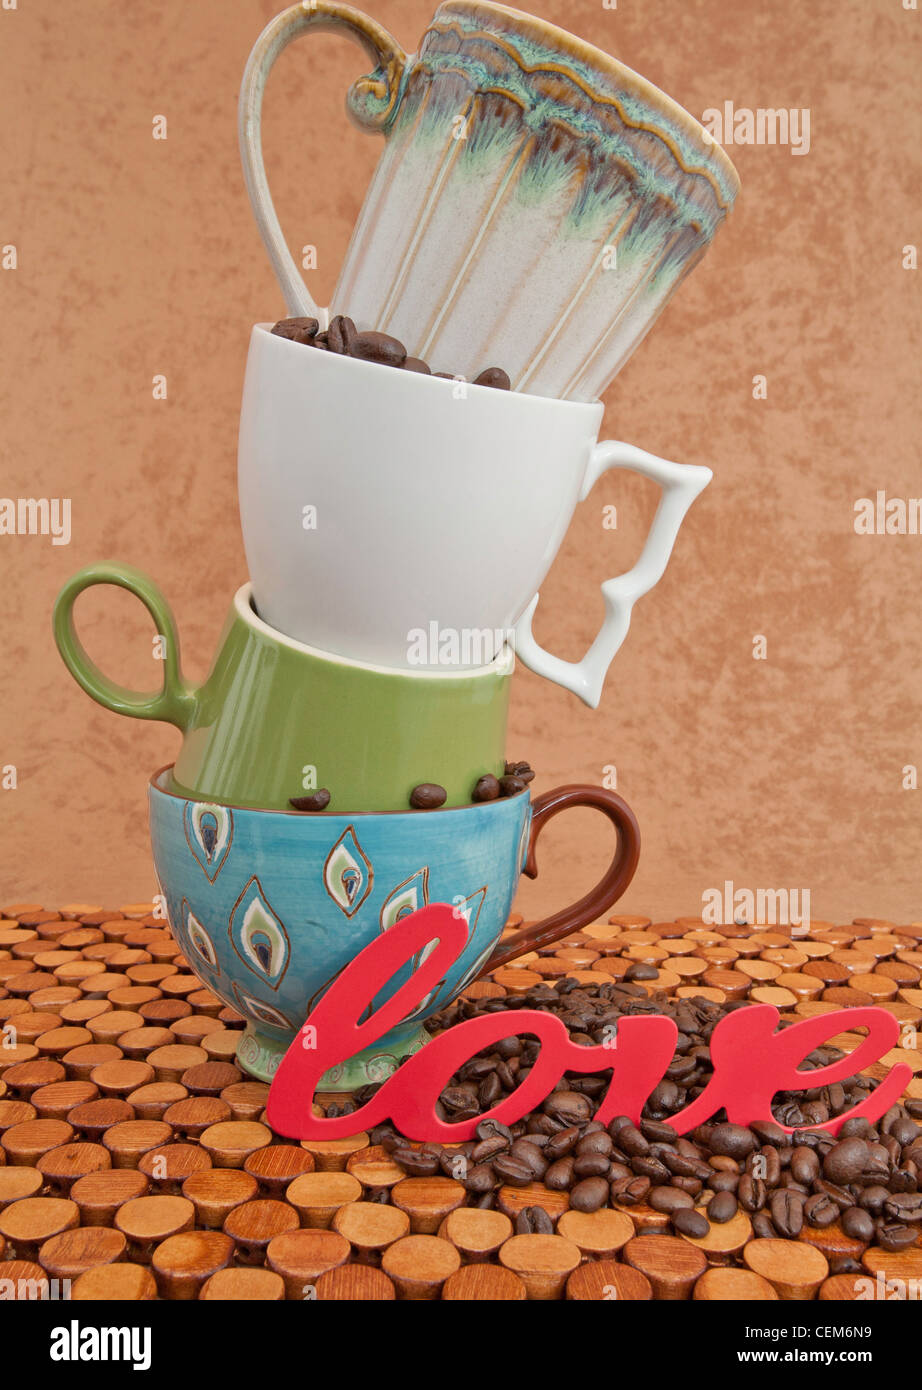 Quatre tasses de café pile sur le dessus de l'autre avec des grains de café et le mot amour sur le comptoir en bois et stuc brown background Banque D'Images